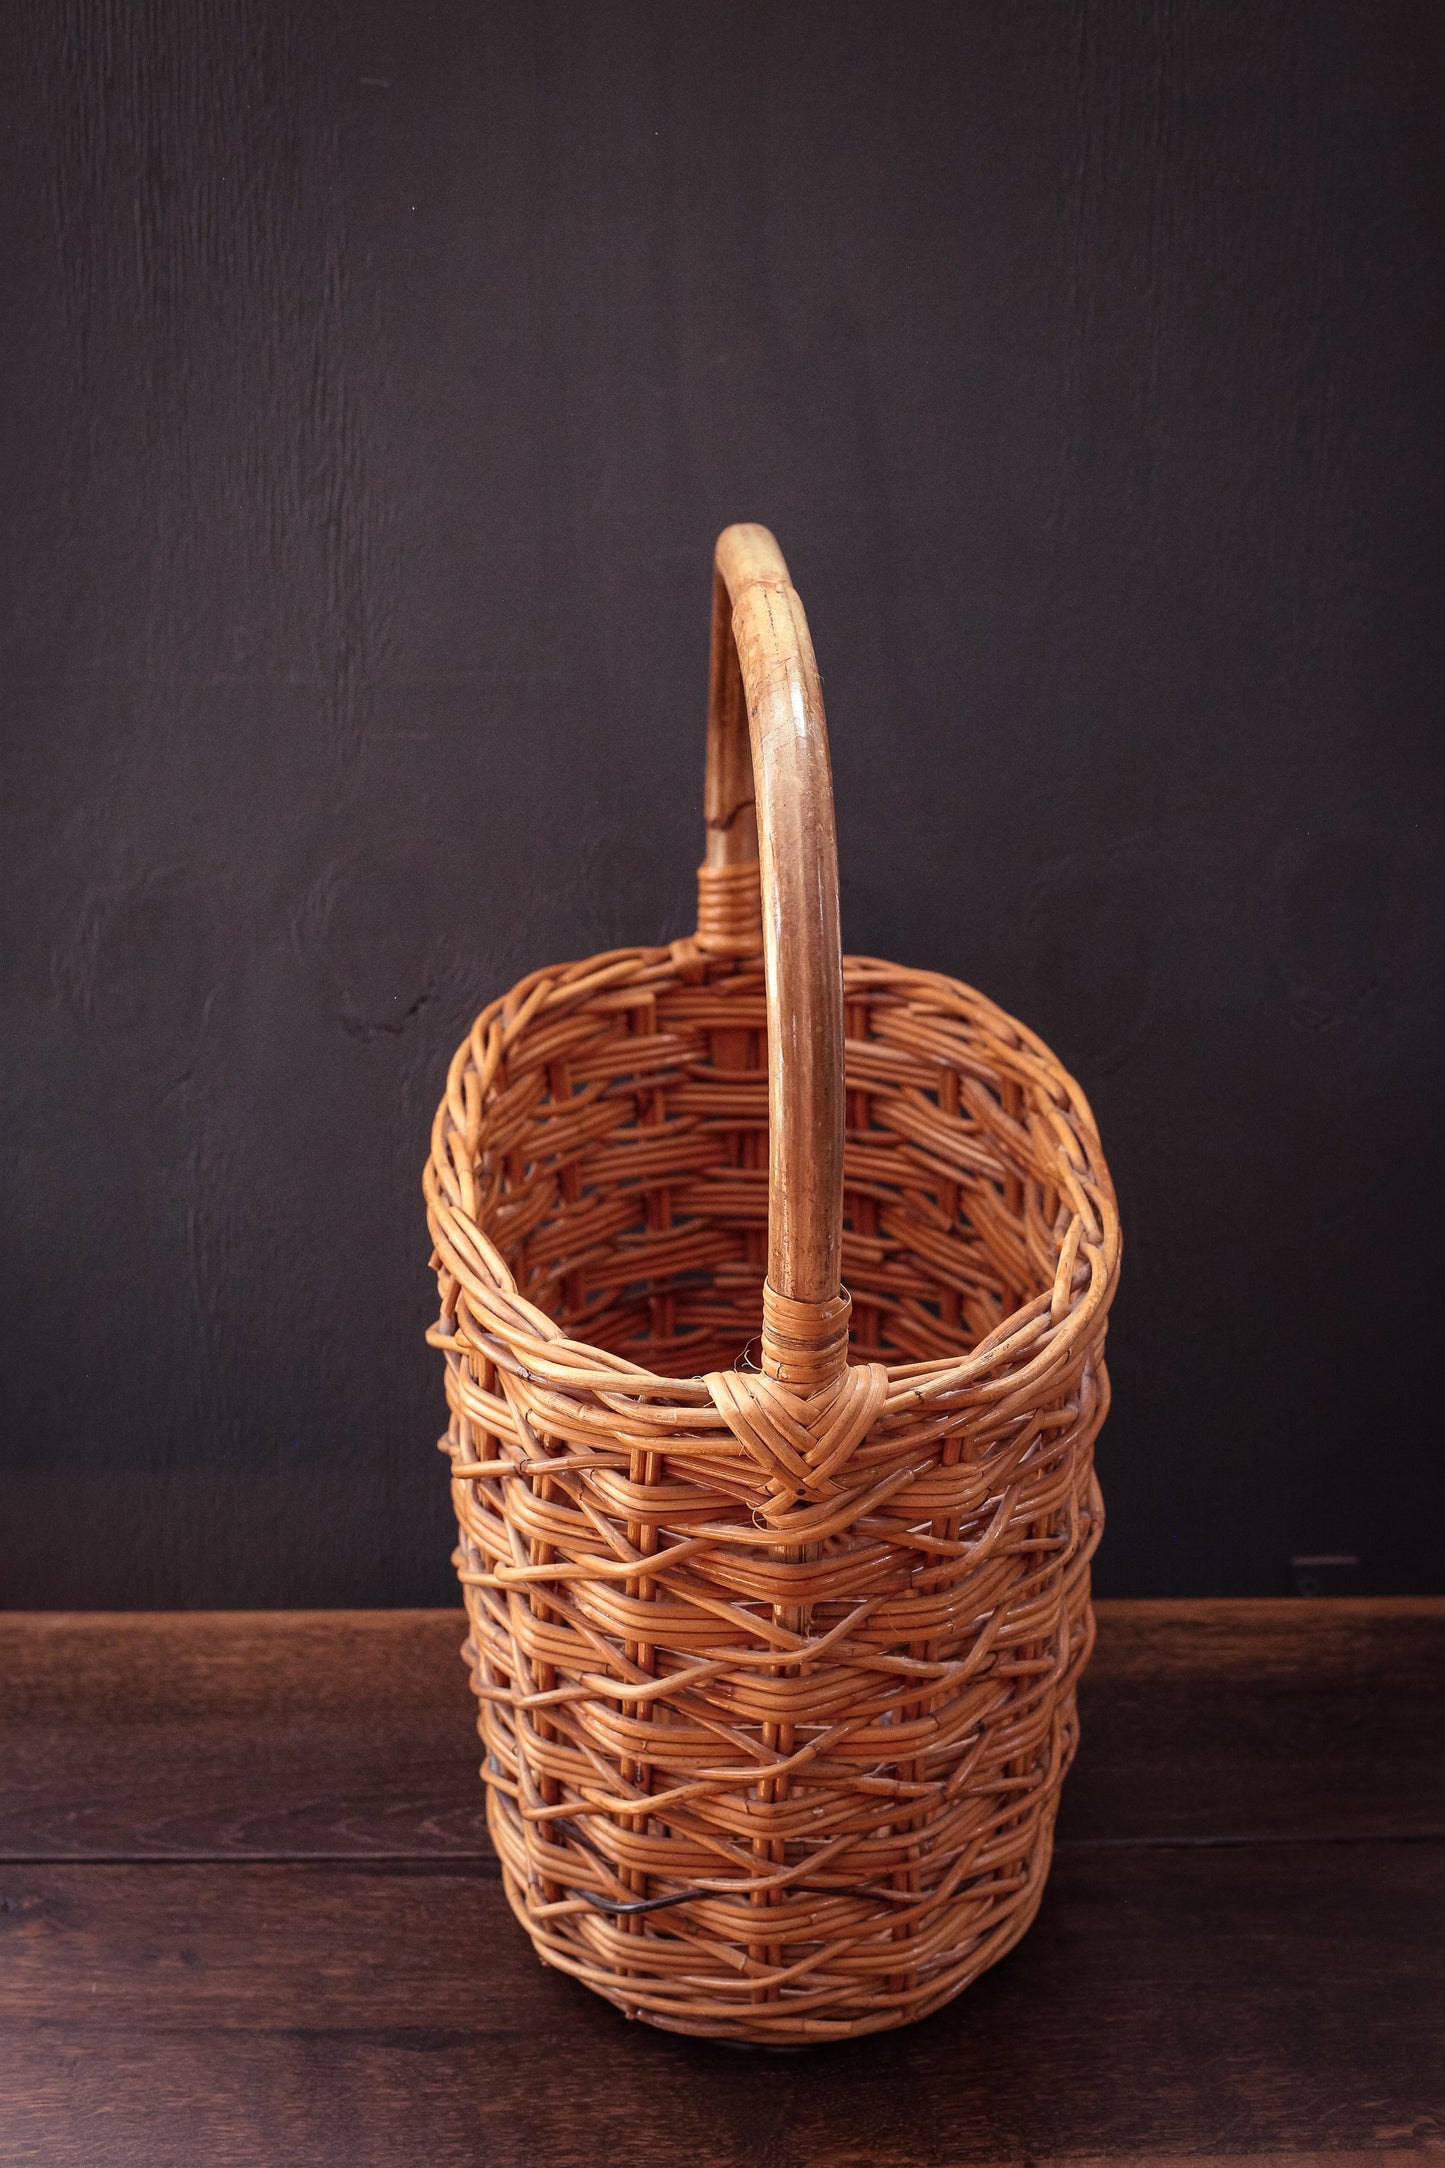 Large Oval Flat Bottom Basket with Handle & Cross Hatch Pattern - Vintage Garden Harvest Picnic Basket